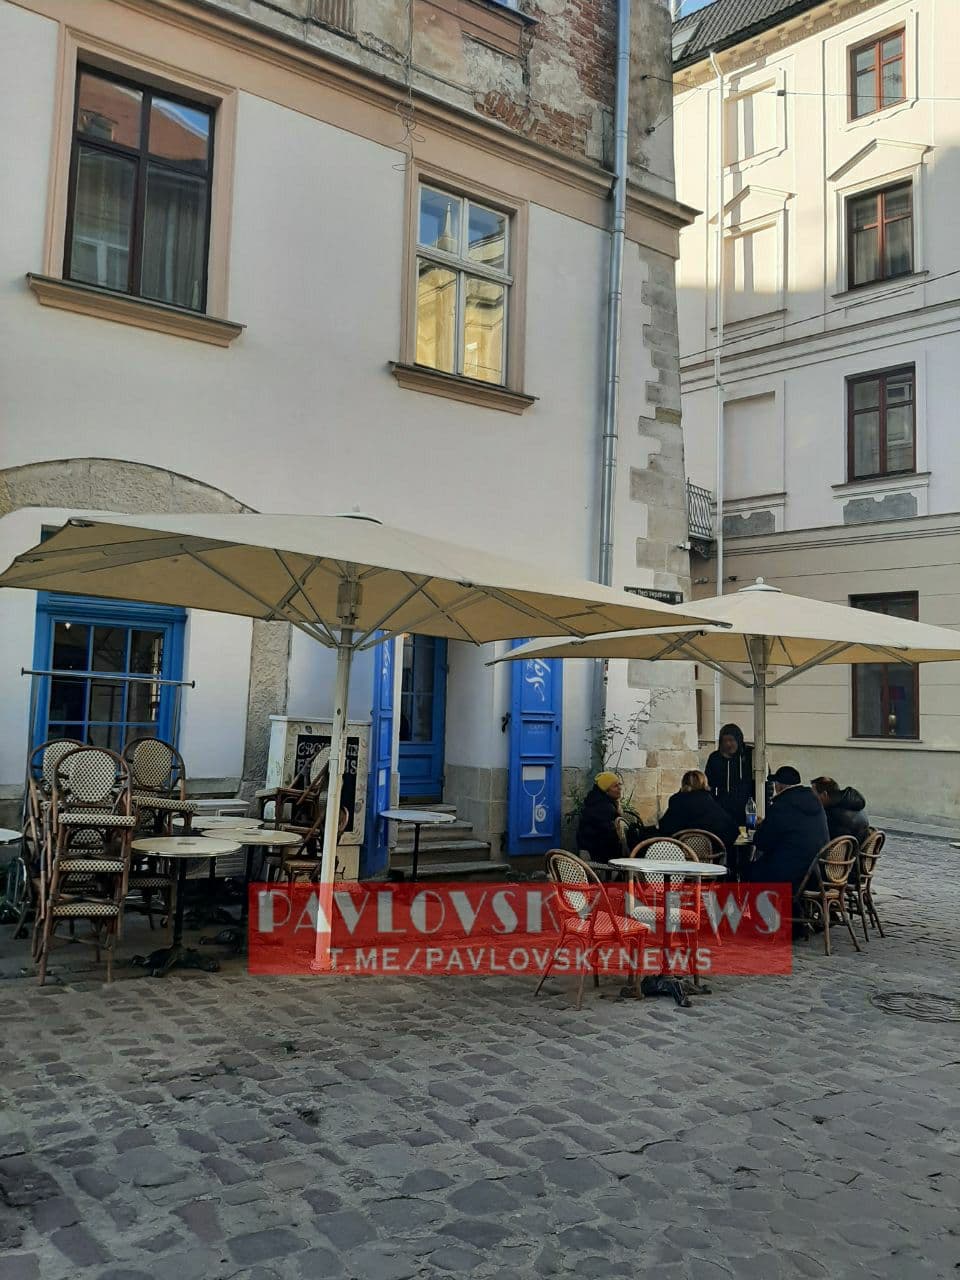 З'явилися фото зі Львова, де кафе обслуговують клієнтів, проігнорувавши карантин вихідного дня